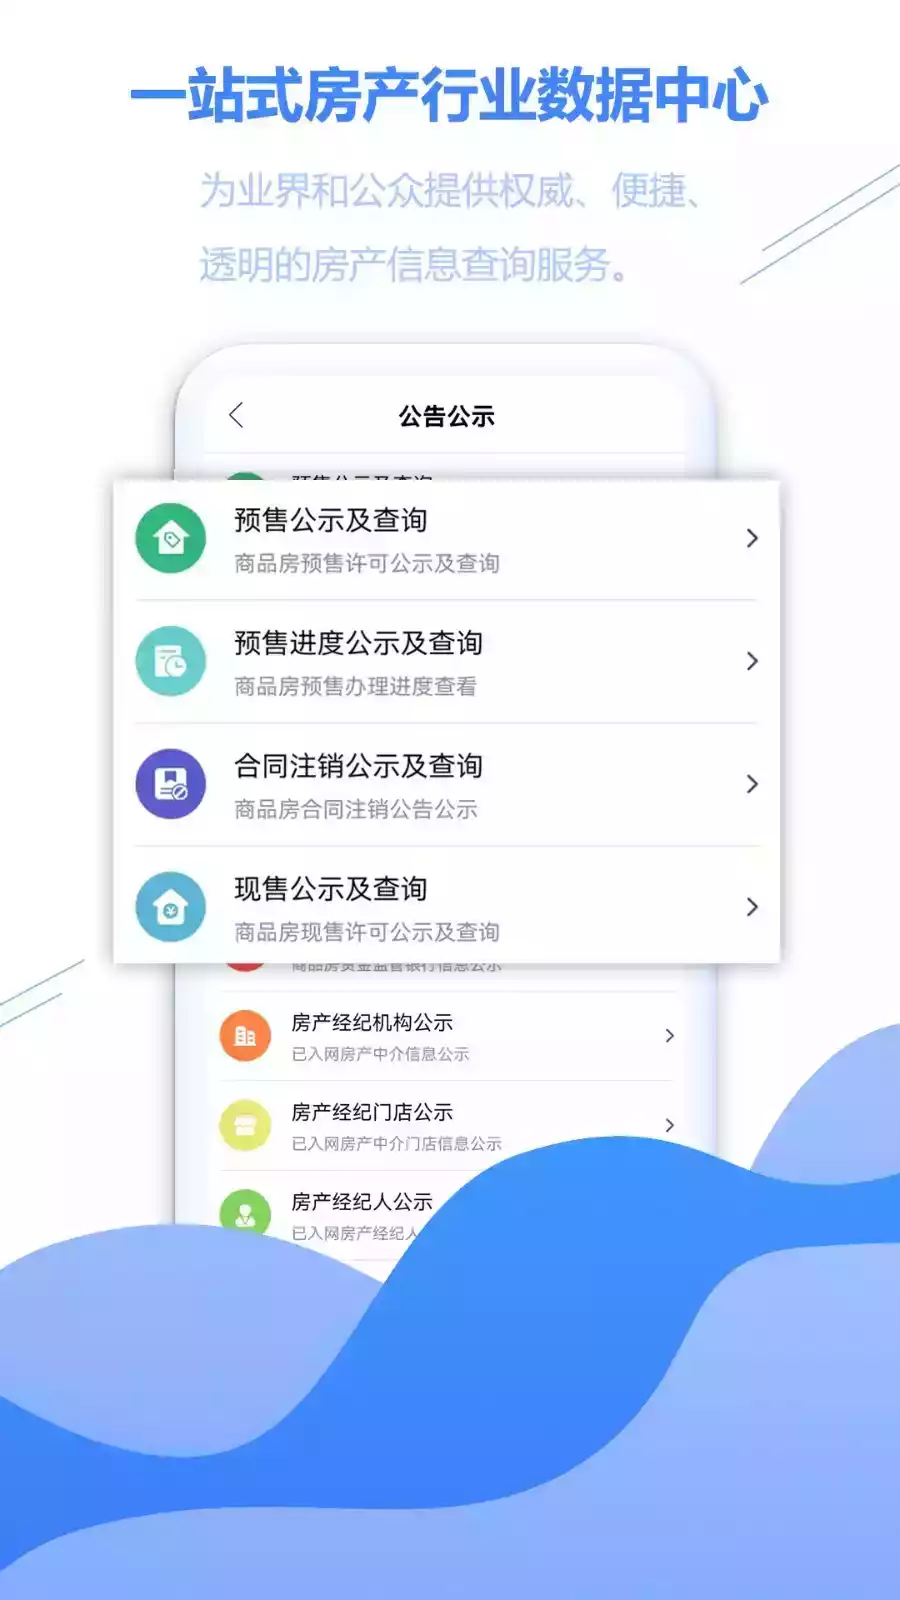 徐房信息网app查询 截图